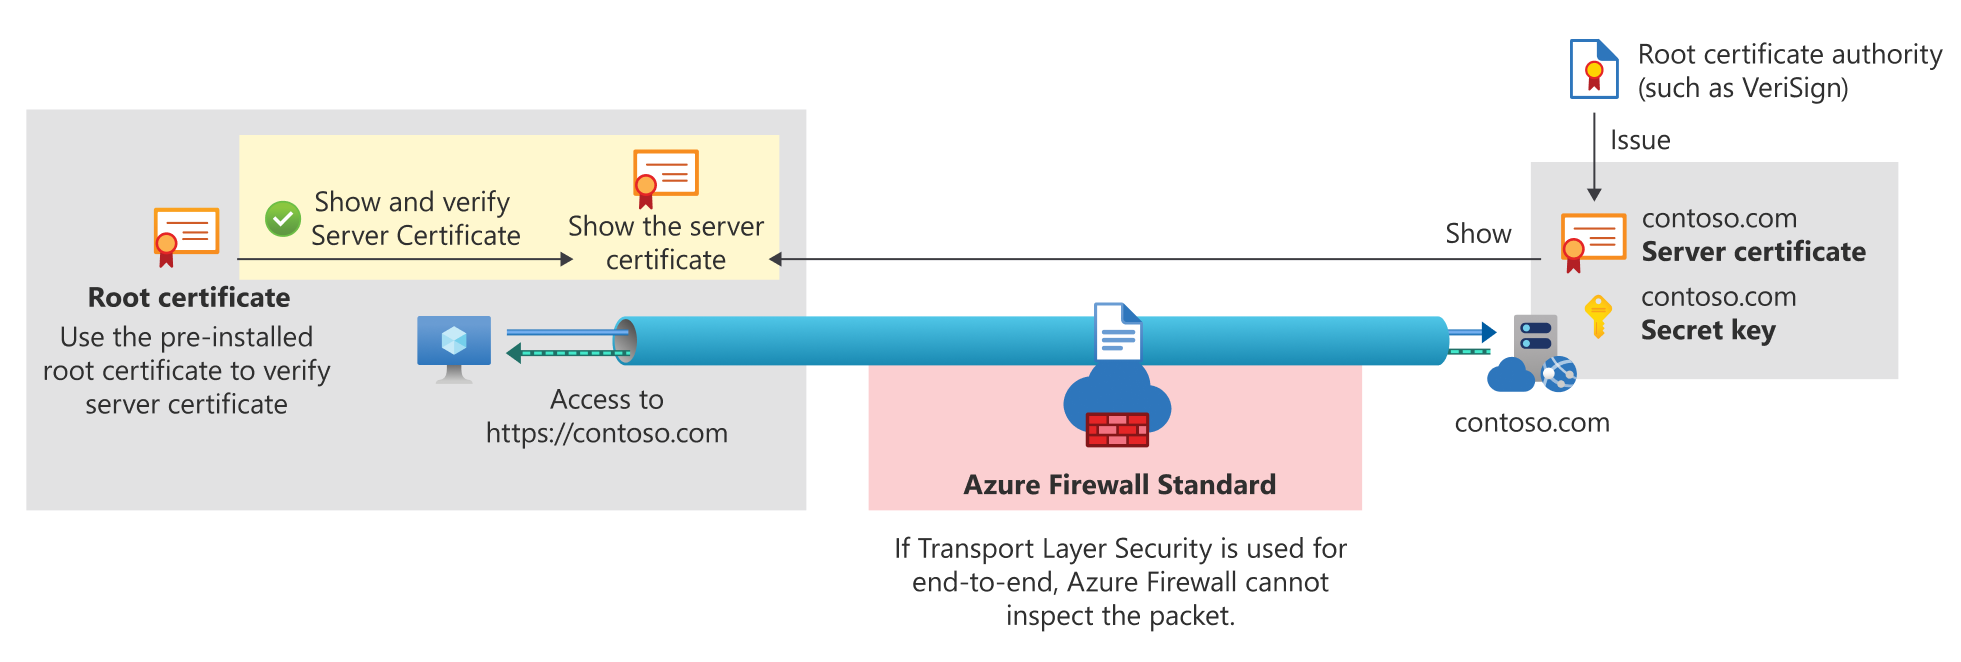 Azure Firewall 표준을 위한 엔드투엔드 TLS